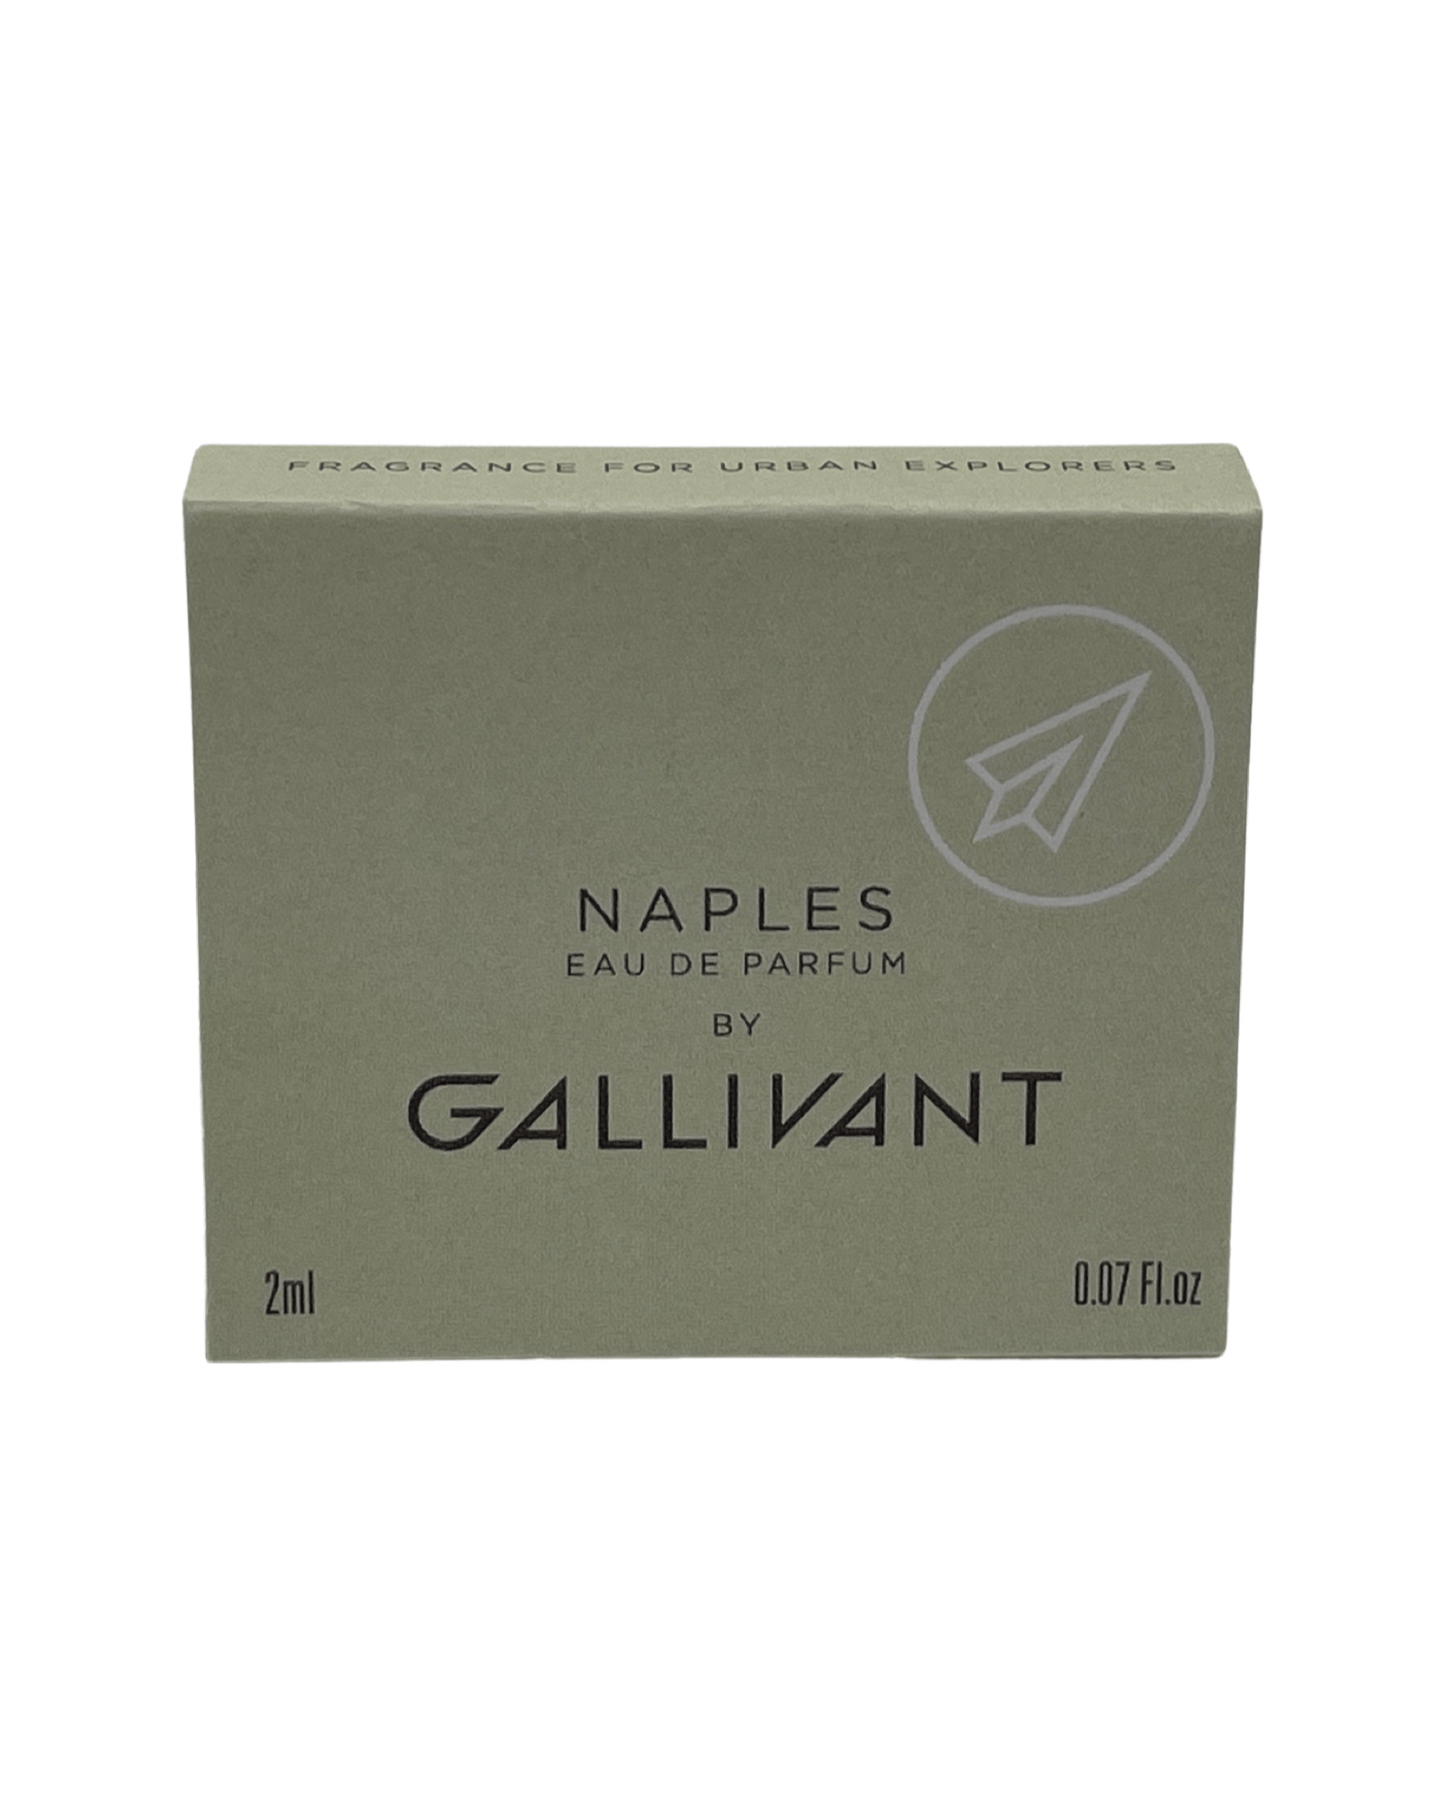 Gallivant - Naples - 2ml.